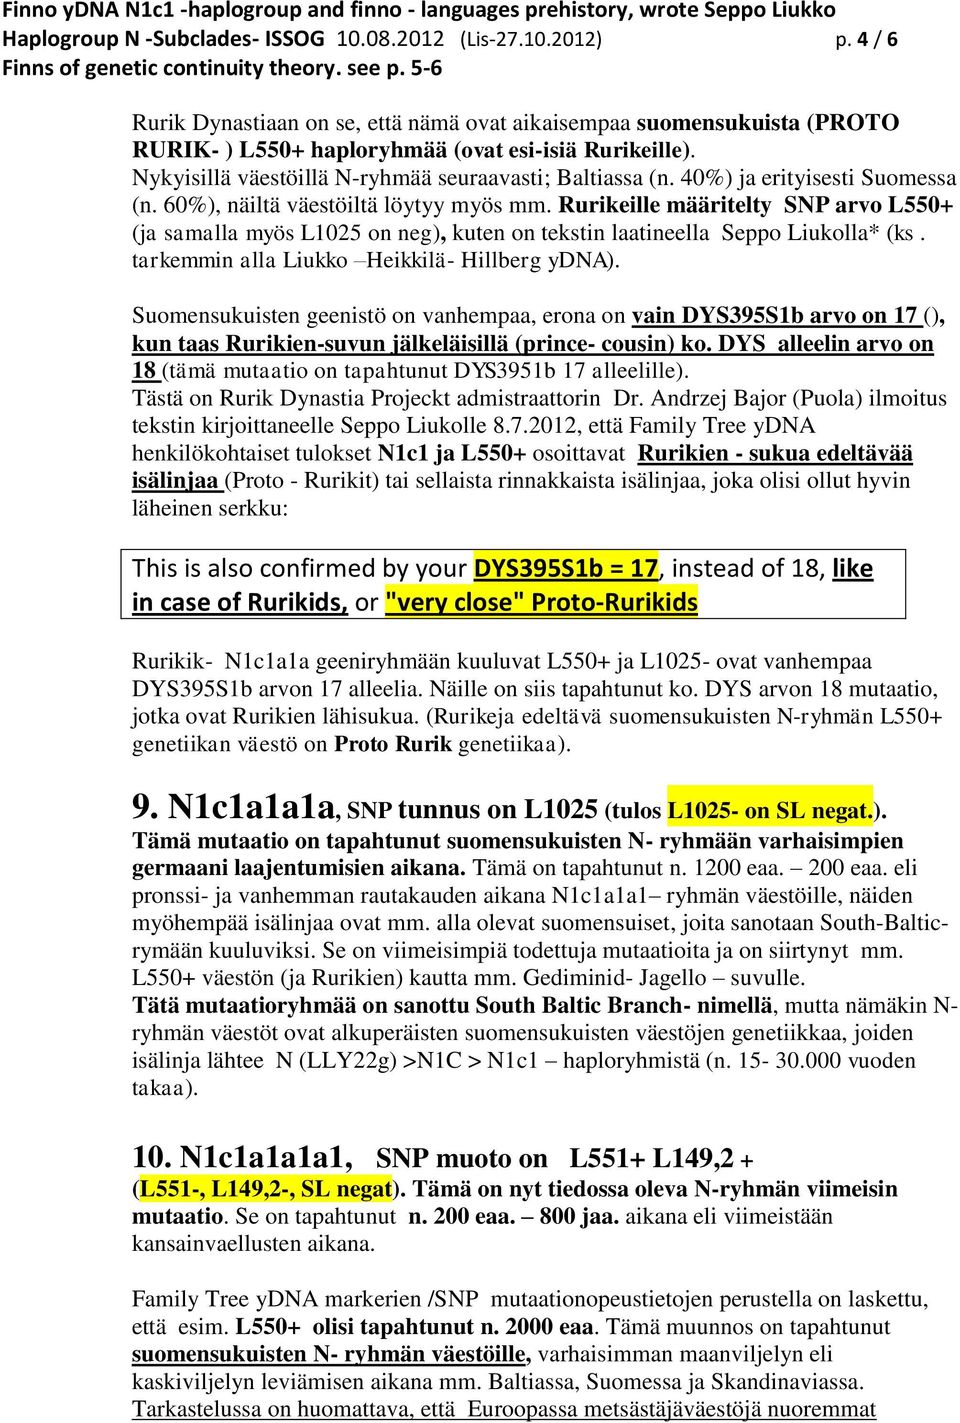 Rurikeille määritelty SNP arvo L550+ (ja samalla myös L1025 on neg), kuten on tekstin laatineella Seppo Liukolla* (ks. tarkemmin alla Liukko Heikkilä- Hillberg ydna).